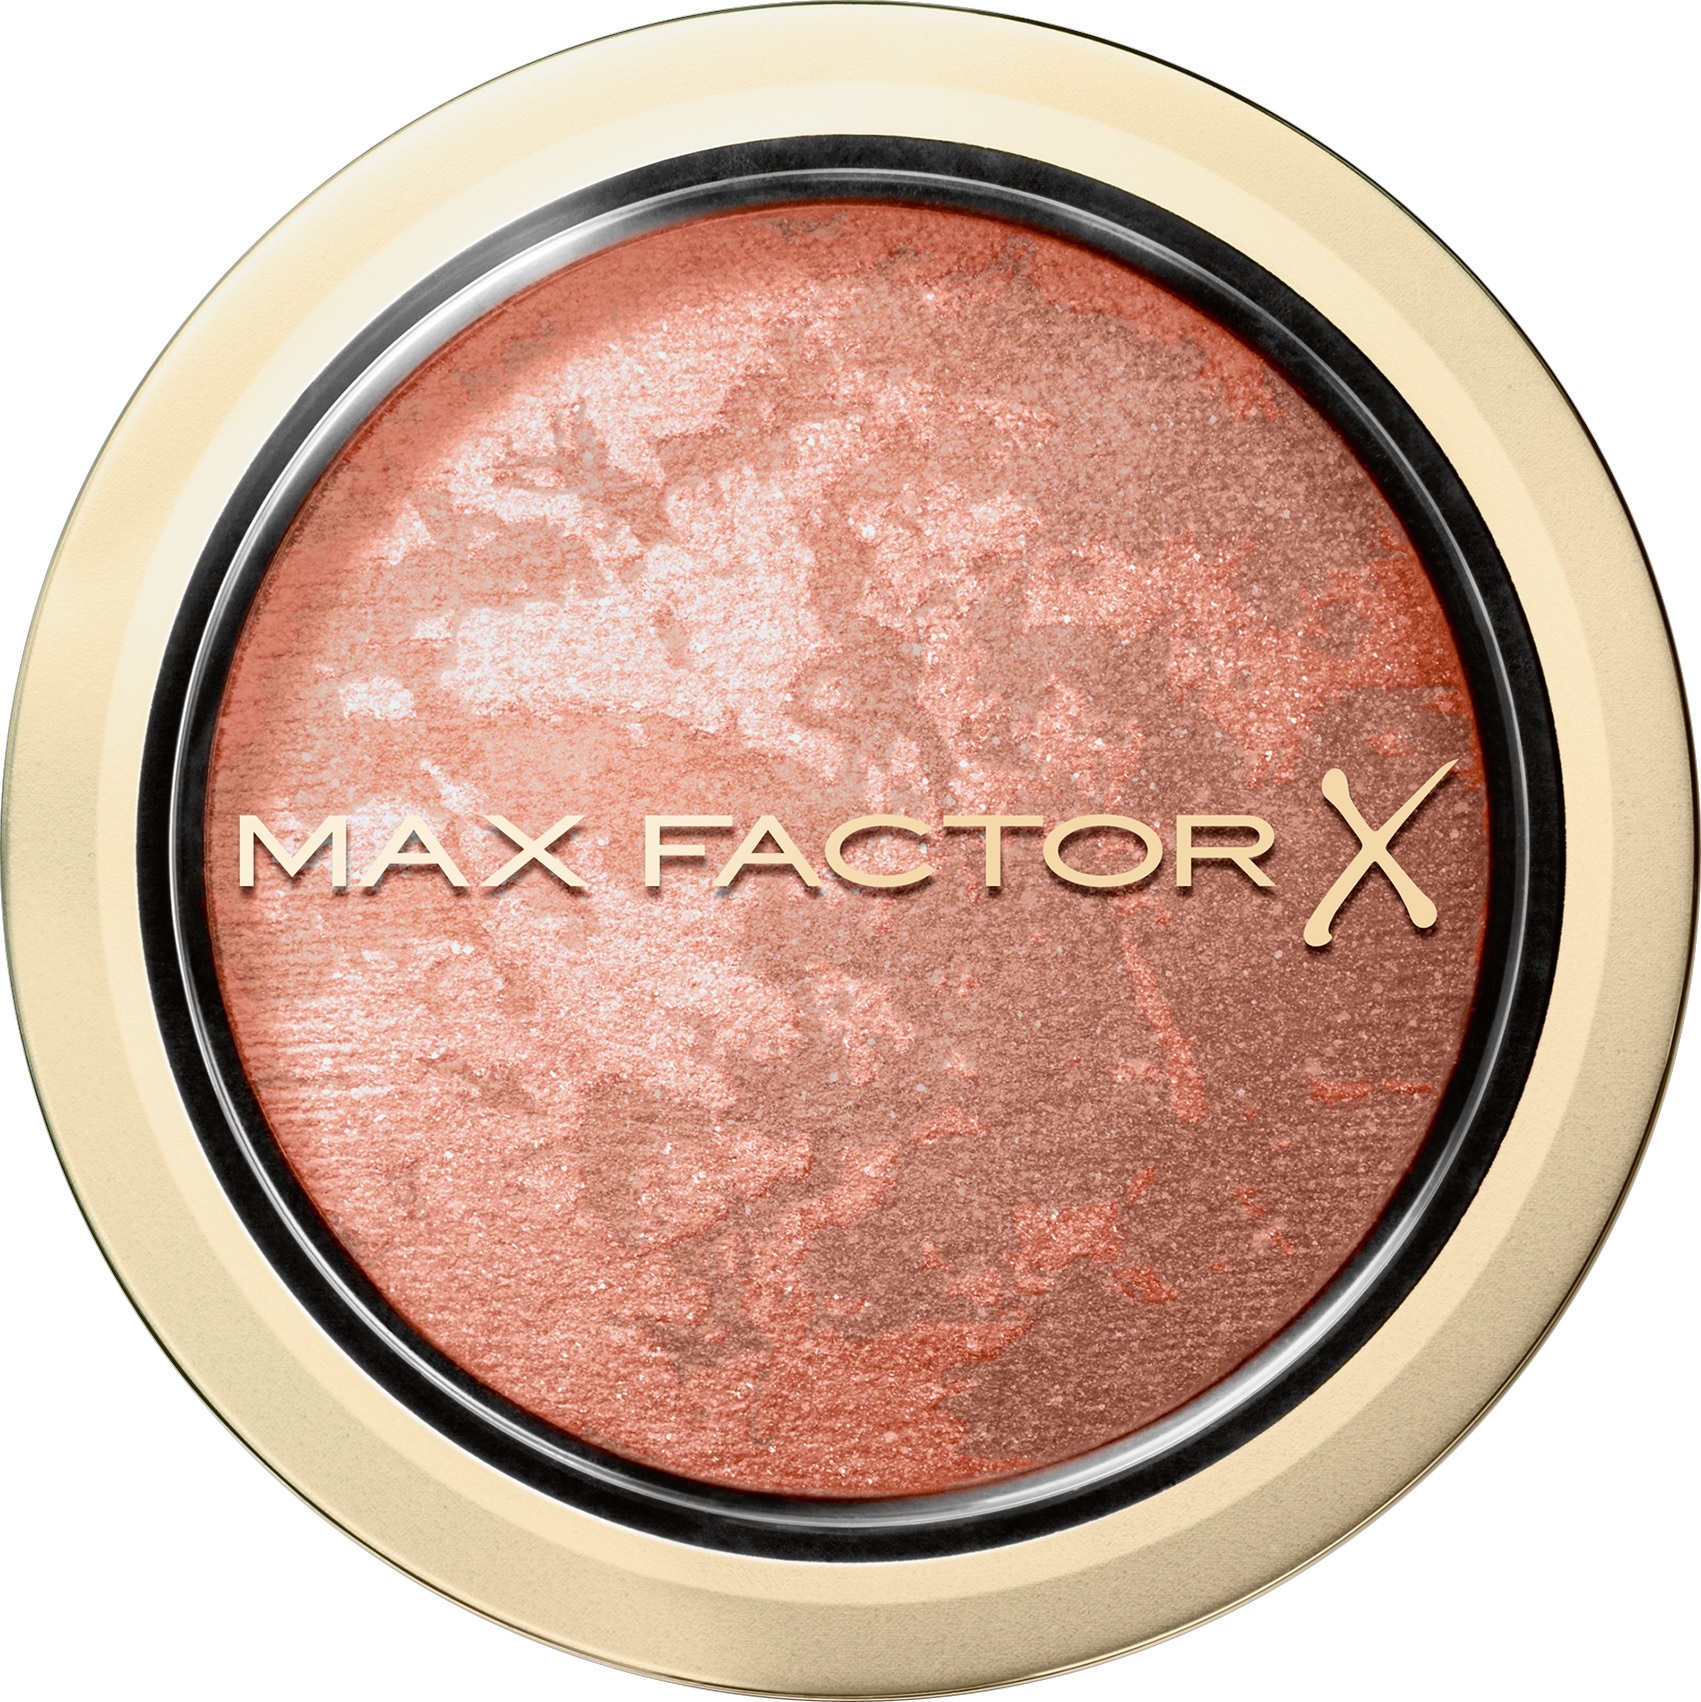 8) Max Factor_Crème Puff Blush_25_Alluring Rose